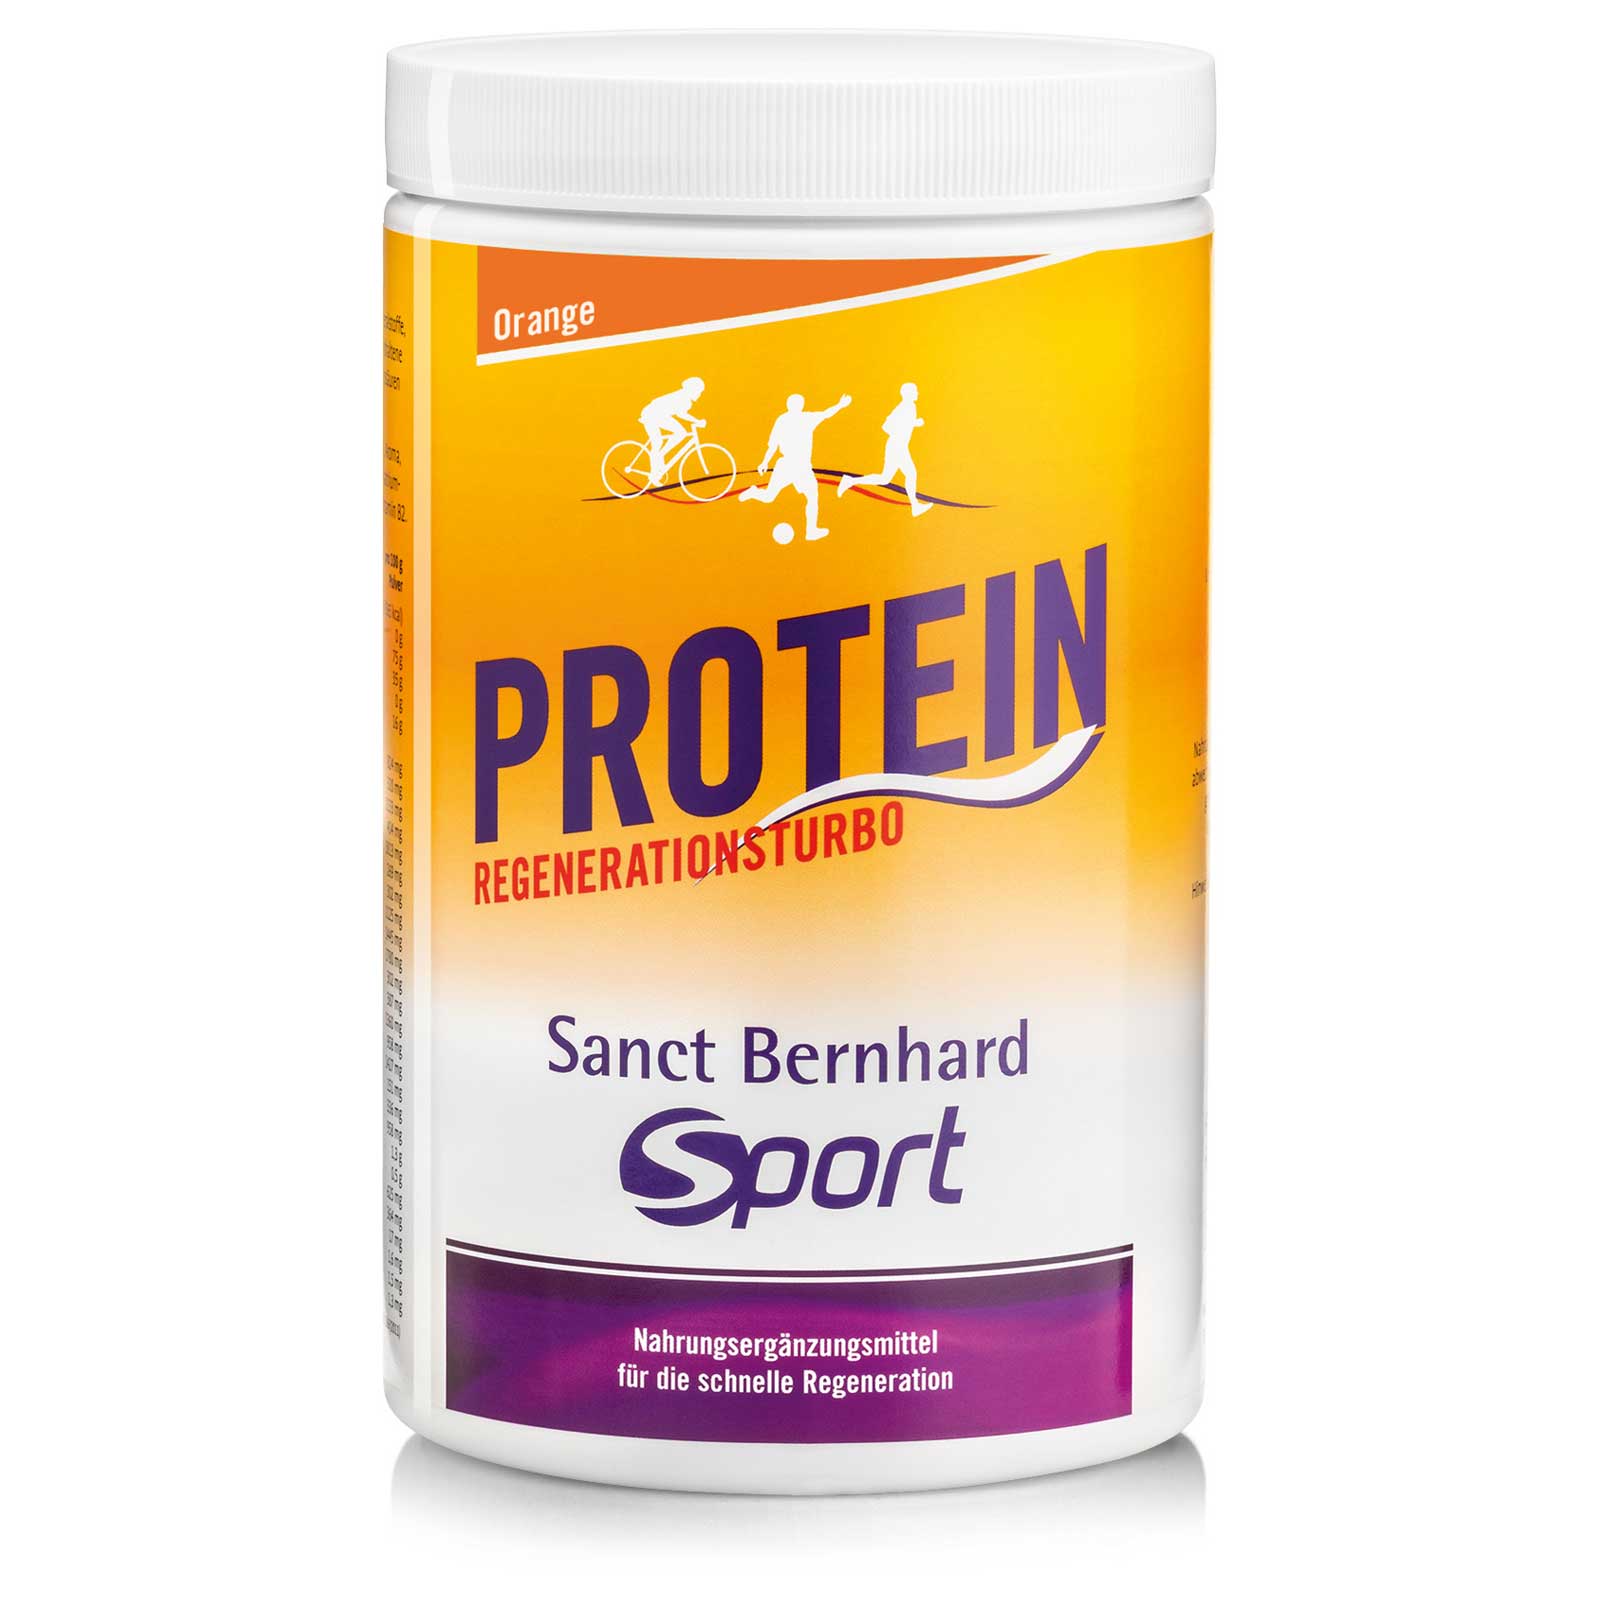 Bild von Sanct Bernhard Sport Protein Regenerationsturbo - Getränkepulver - 725g